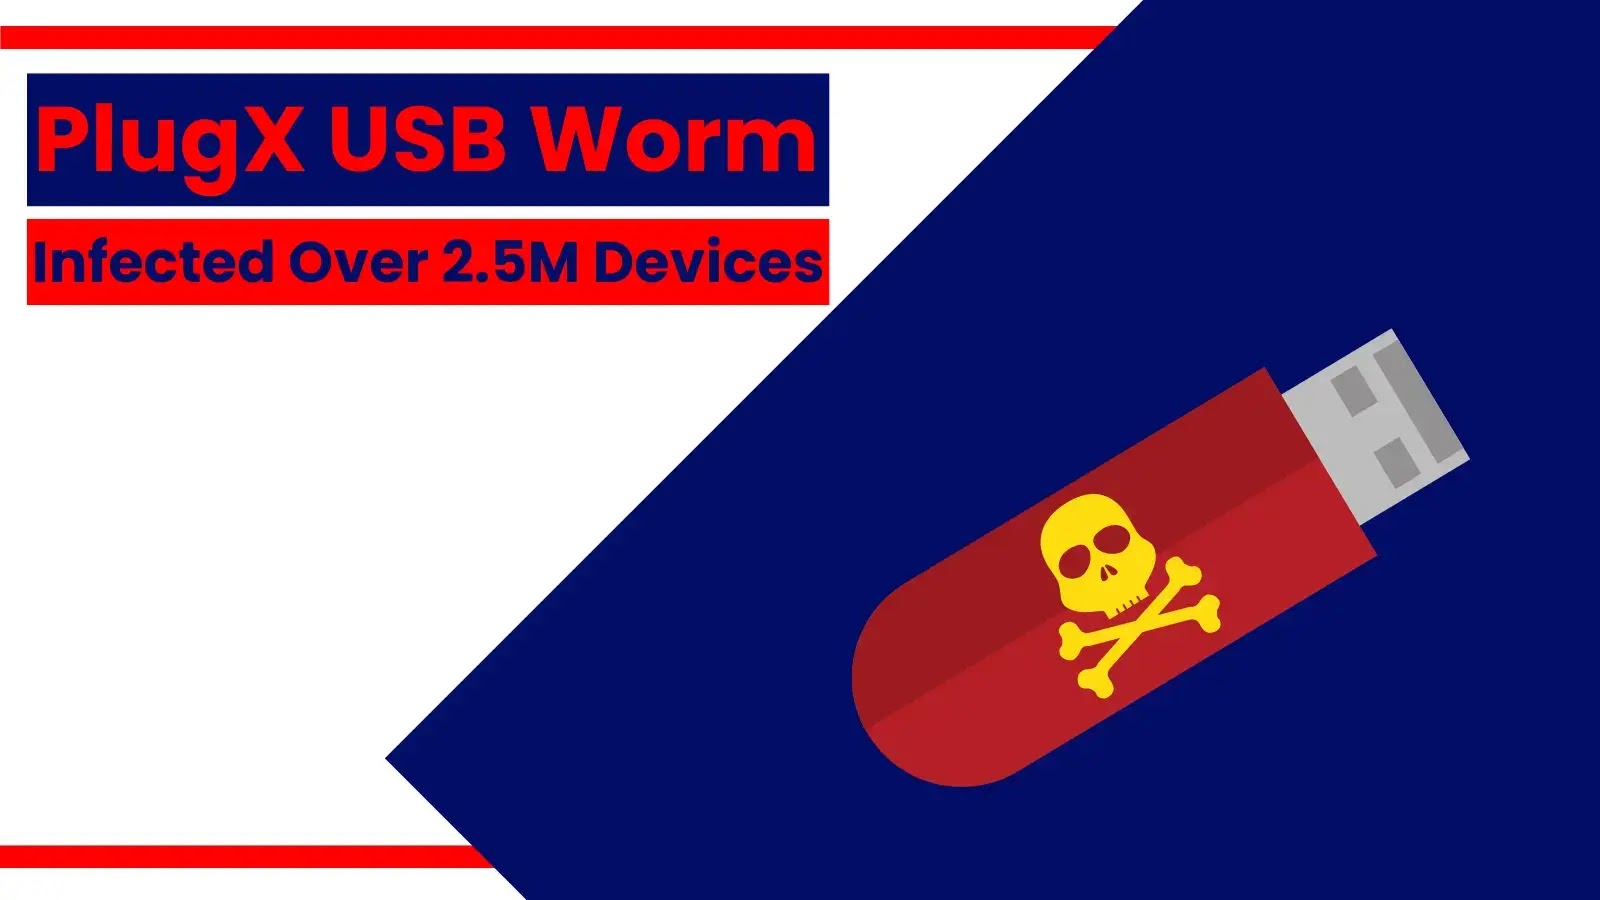 PlugX USB solucanı 2,5 milyondan fazla cihaza bulaştı